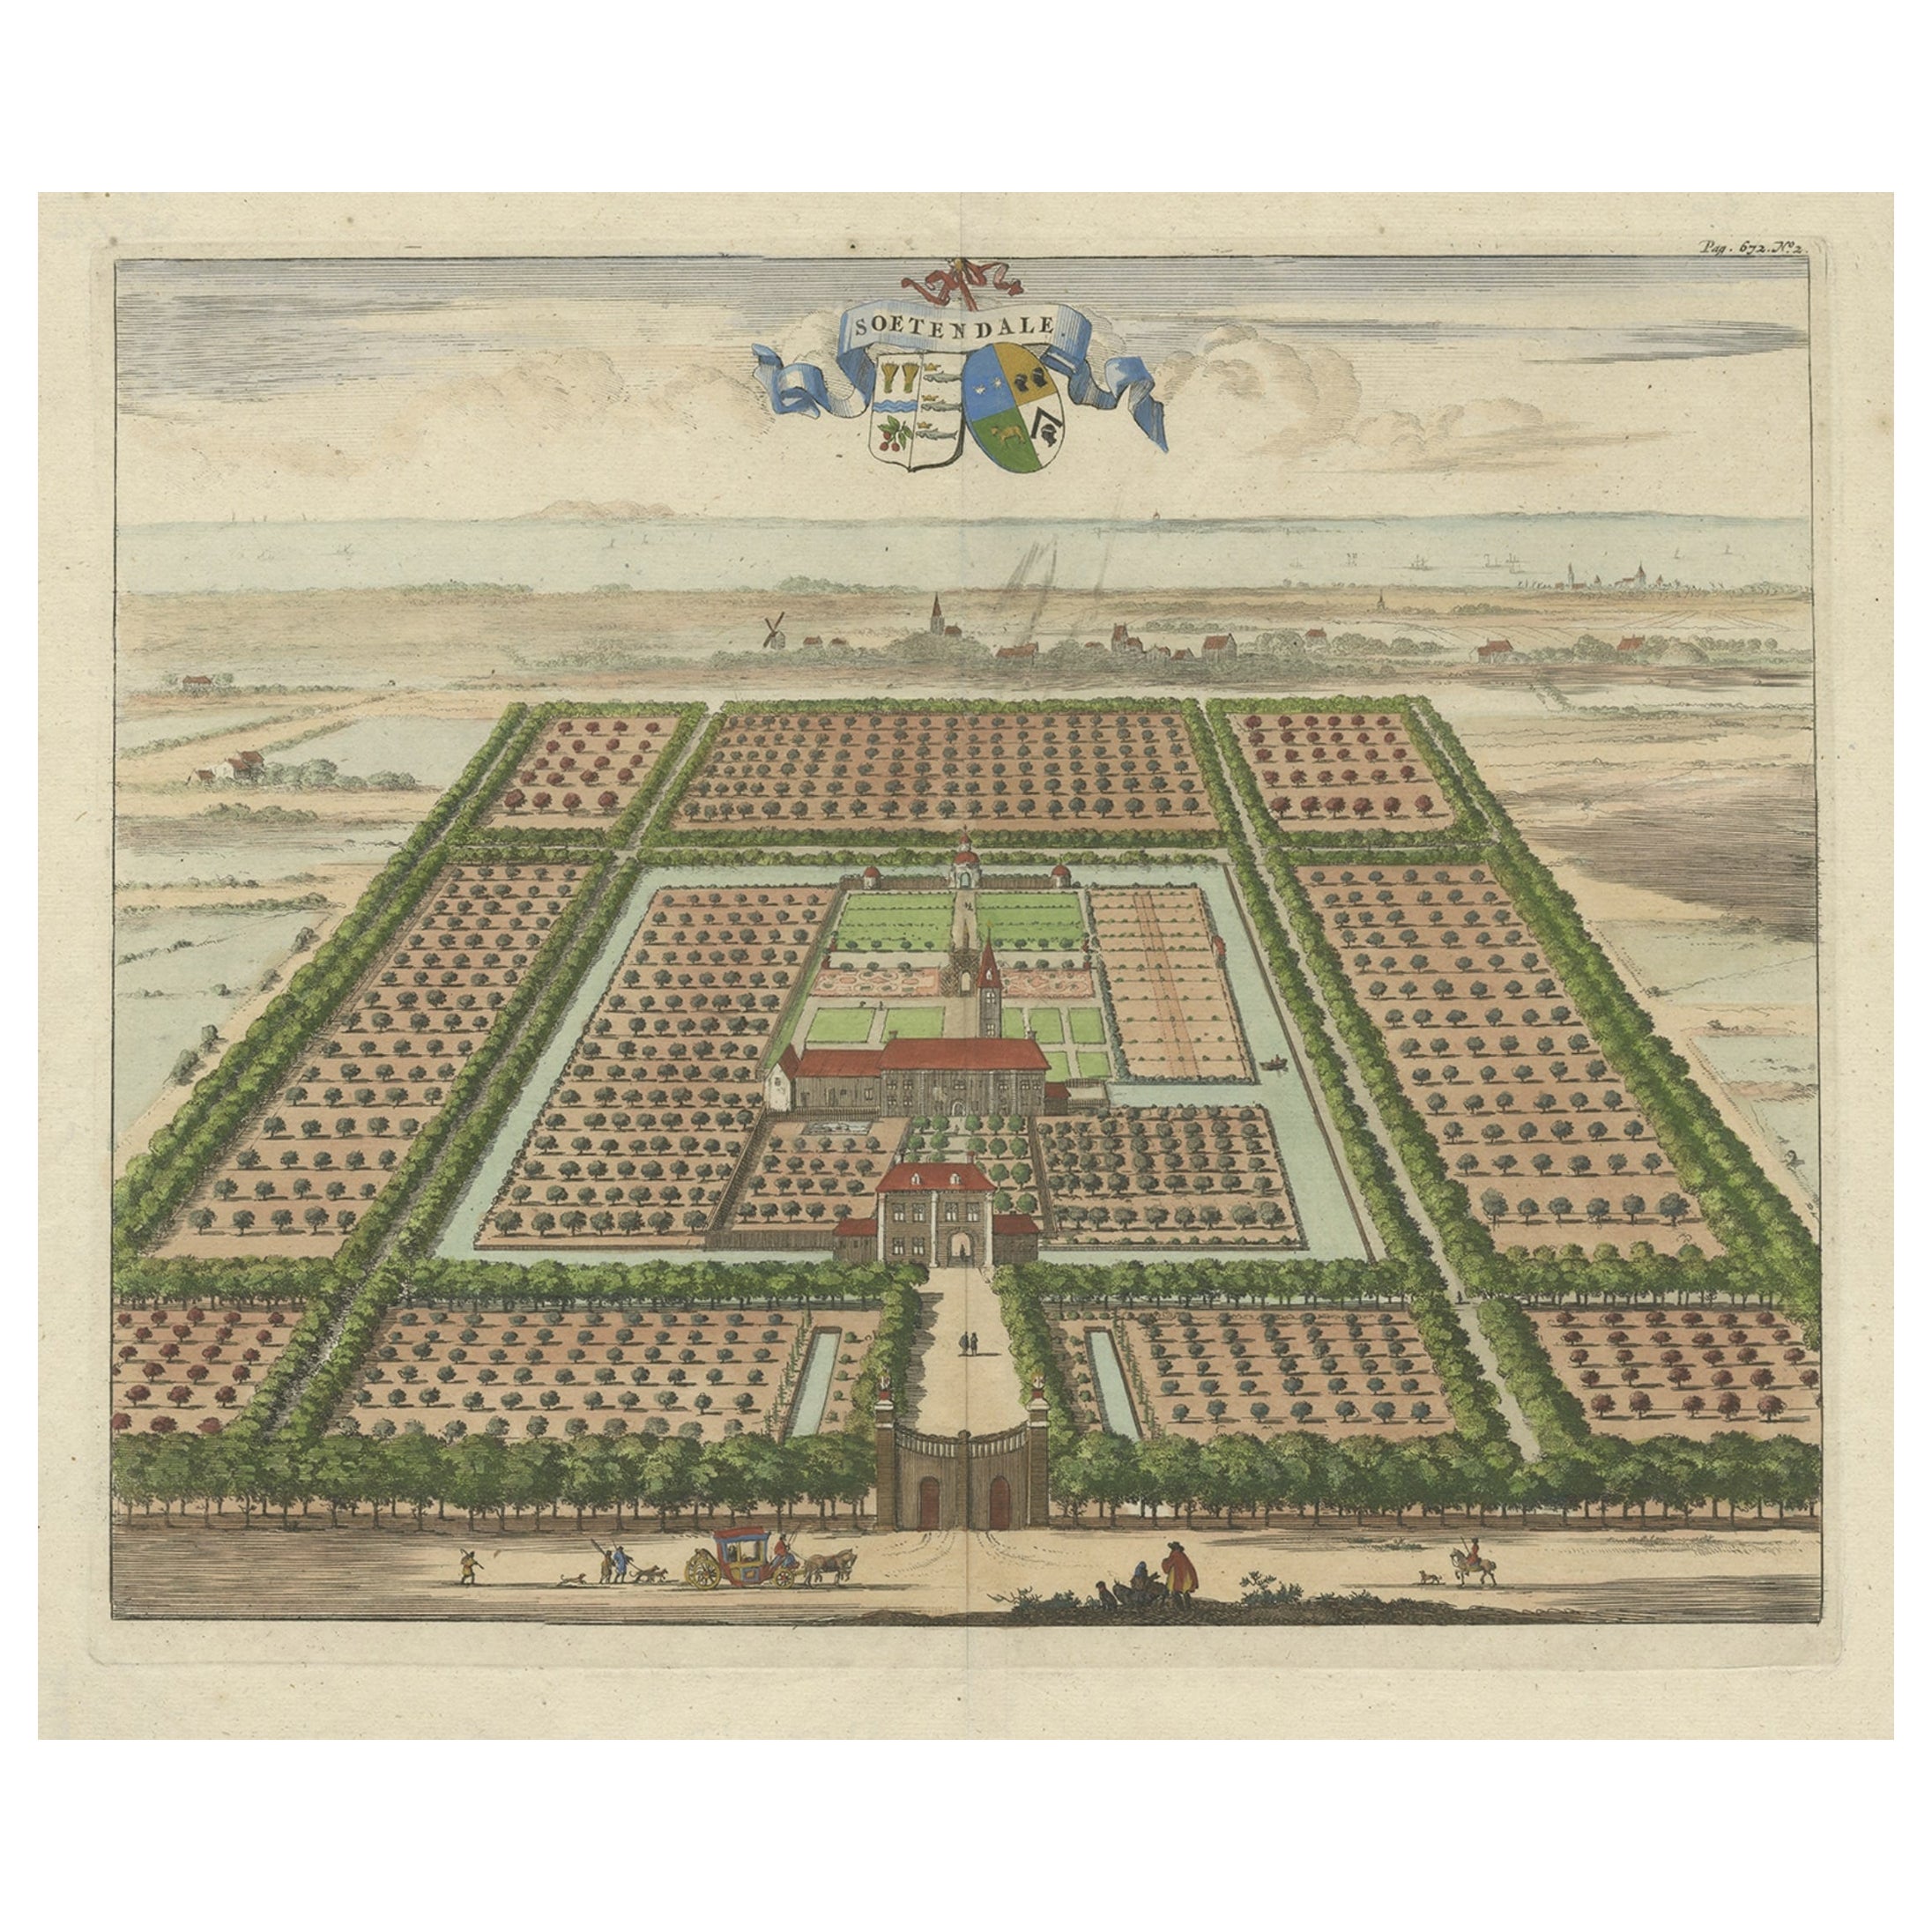 Impression de la propriété de Soetendale, entre Grijps et Serooskerke, 1696